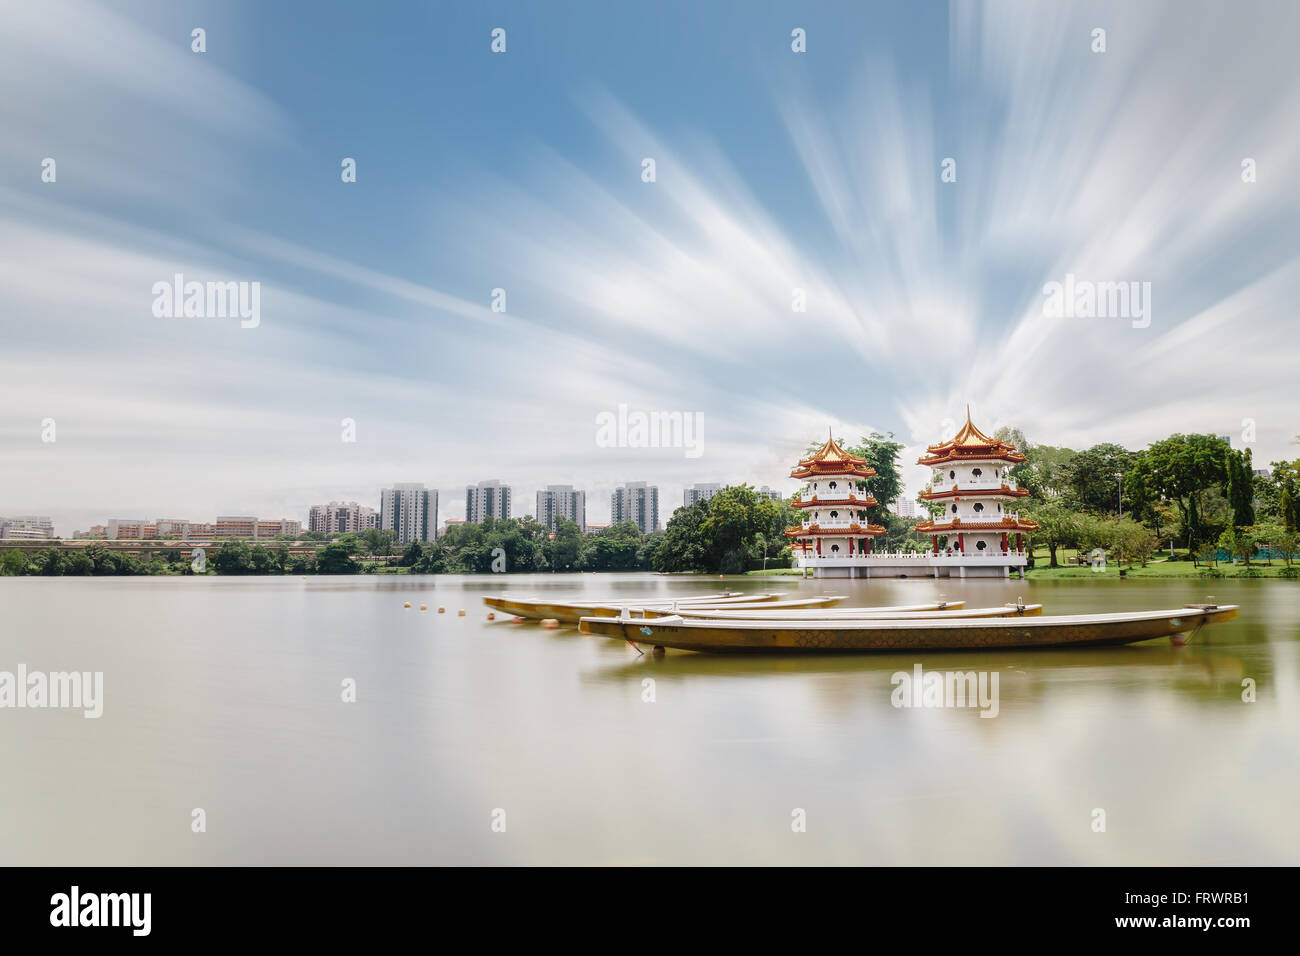 Singapore giardini cinesi tranquilla mattina scena con barche Foto Stock